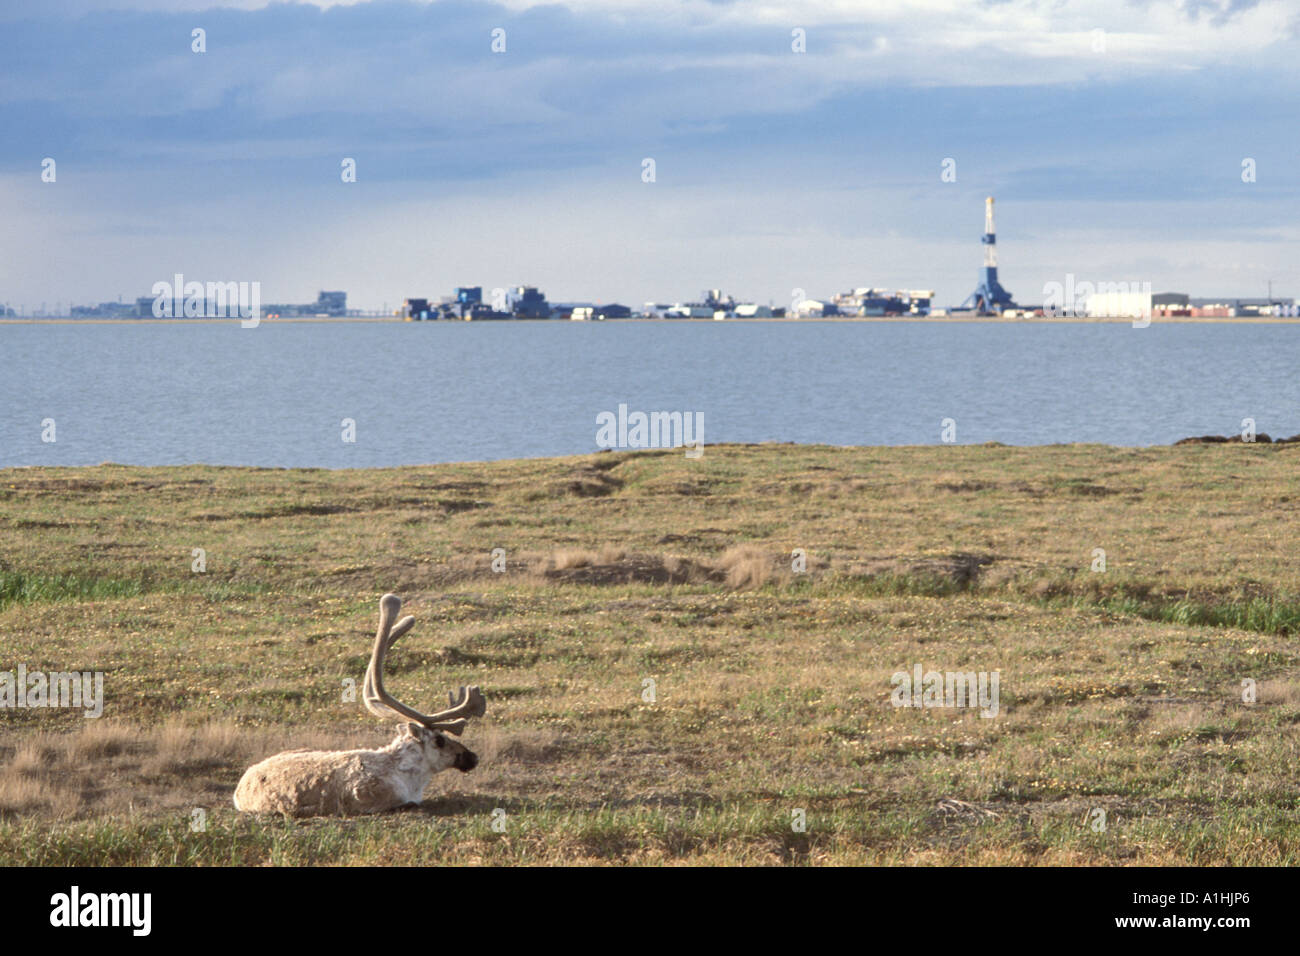 Le caribou de la toundra Rangifer tarandus bull avec ses bois de velours se reposant près de la ville pétrolière de Prudhoe Bay en Alaska arctique Banque D'Images